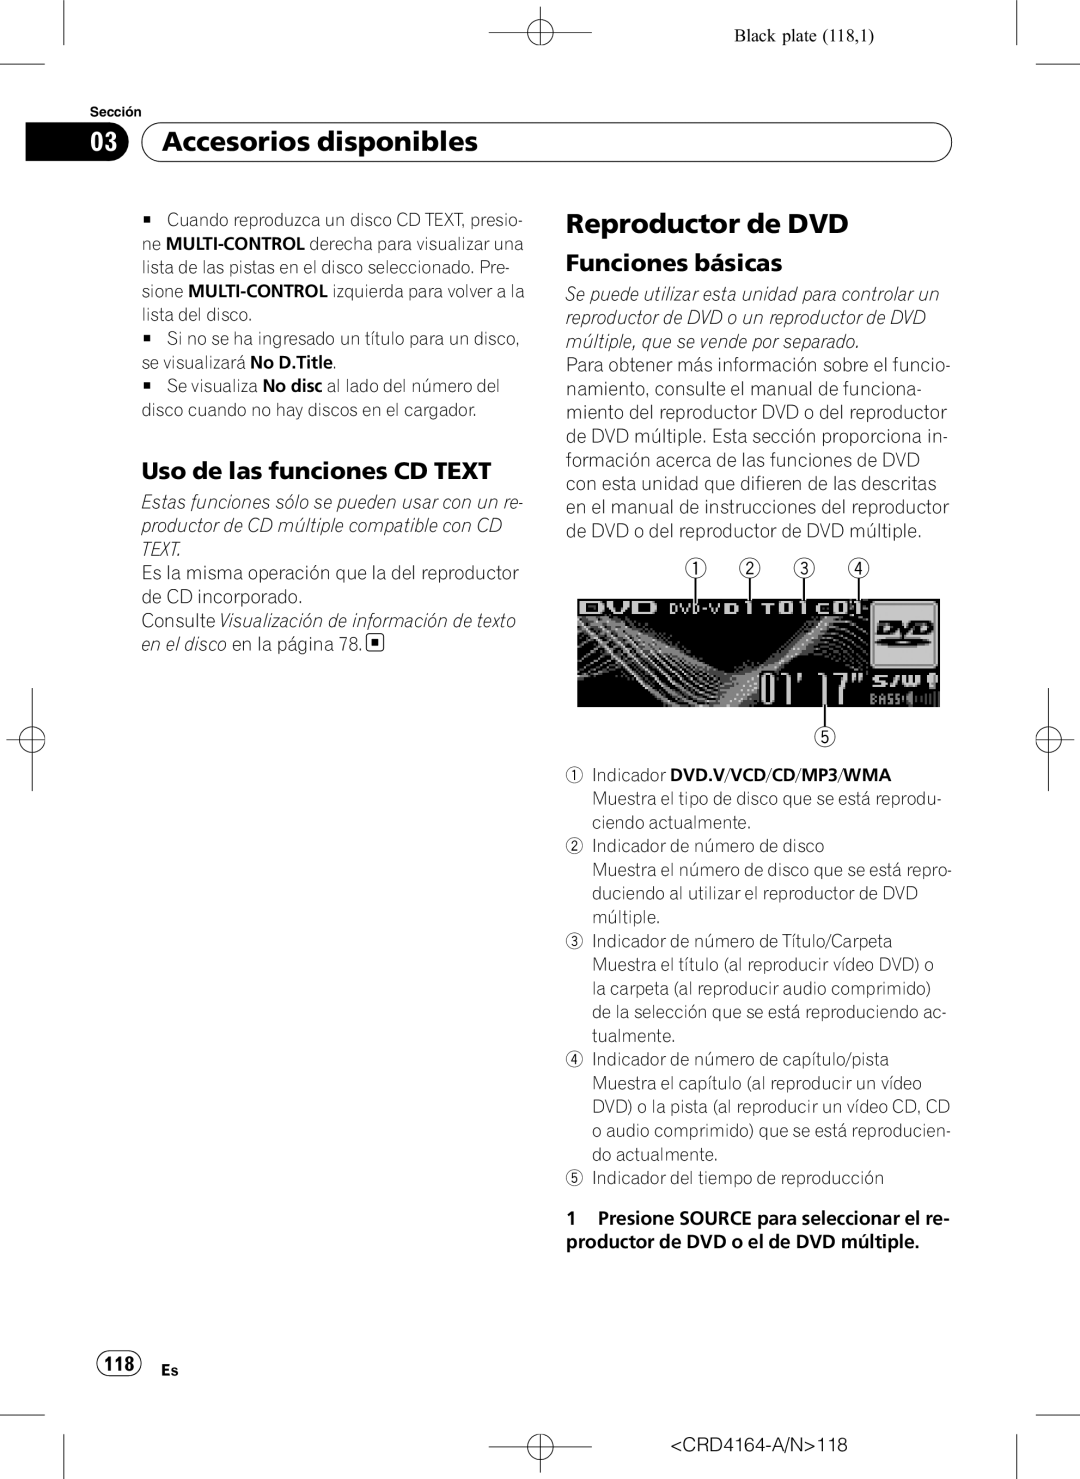 Pioneer DEH-P7950UB Reproductor de DVD, Uso de las funciones CD TEXT, 1 2 3, 118 Es, Accesorios disponibles 